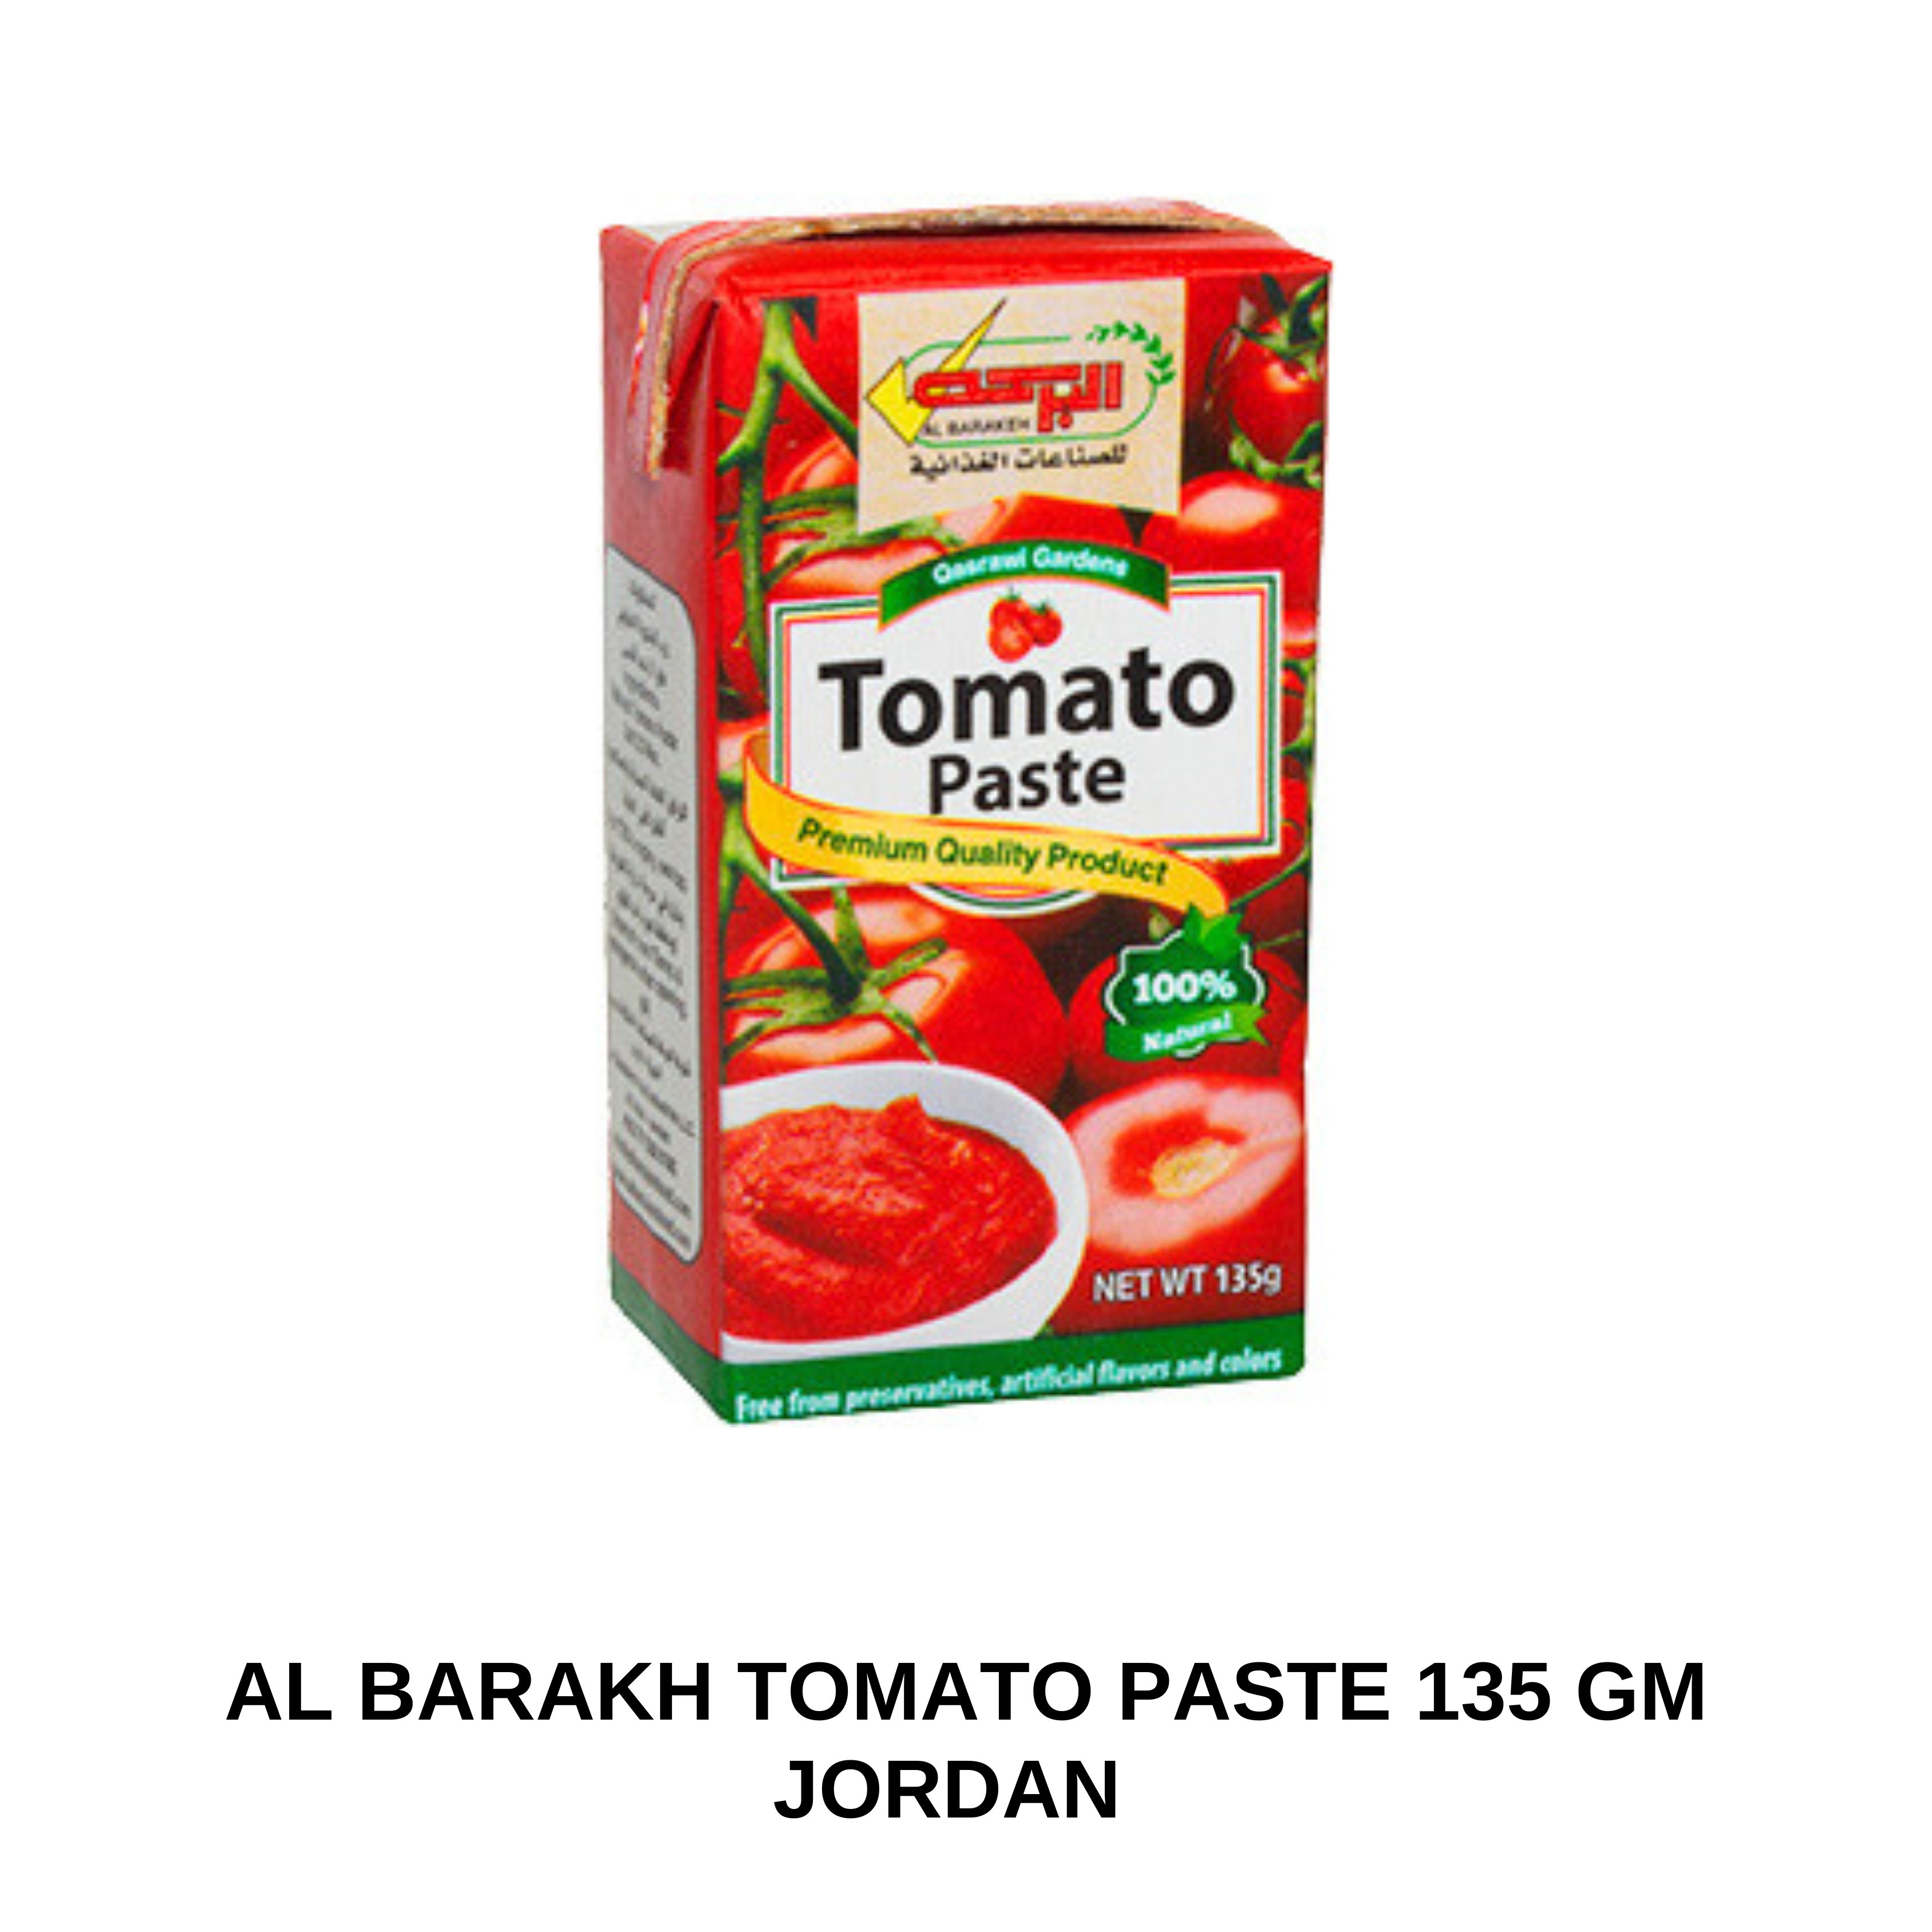 Al Barakh Tomato Paste